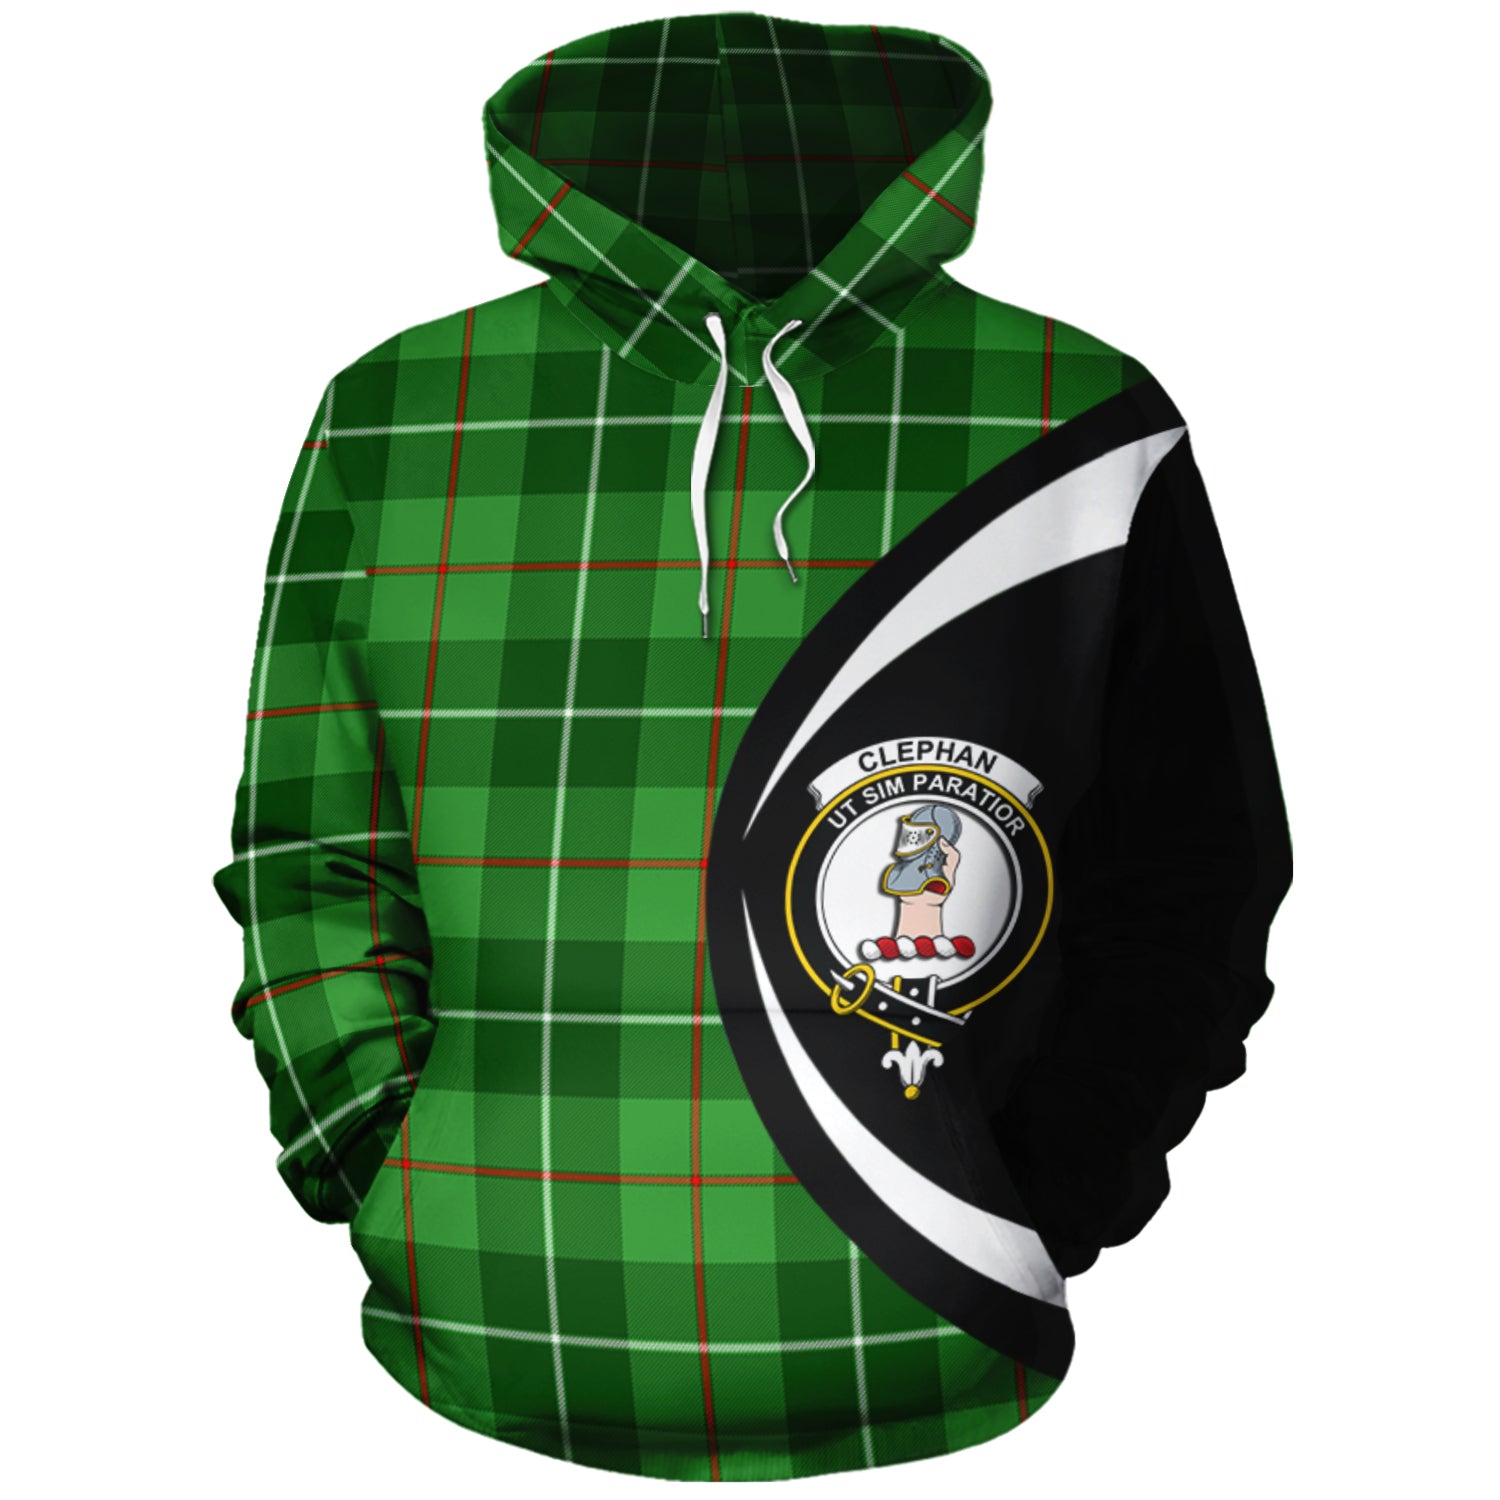 scottish-clephan-clan-crest-circle-style-tartan-hoodie